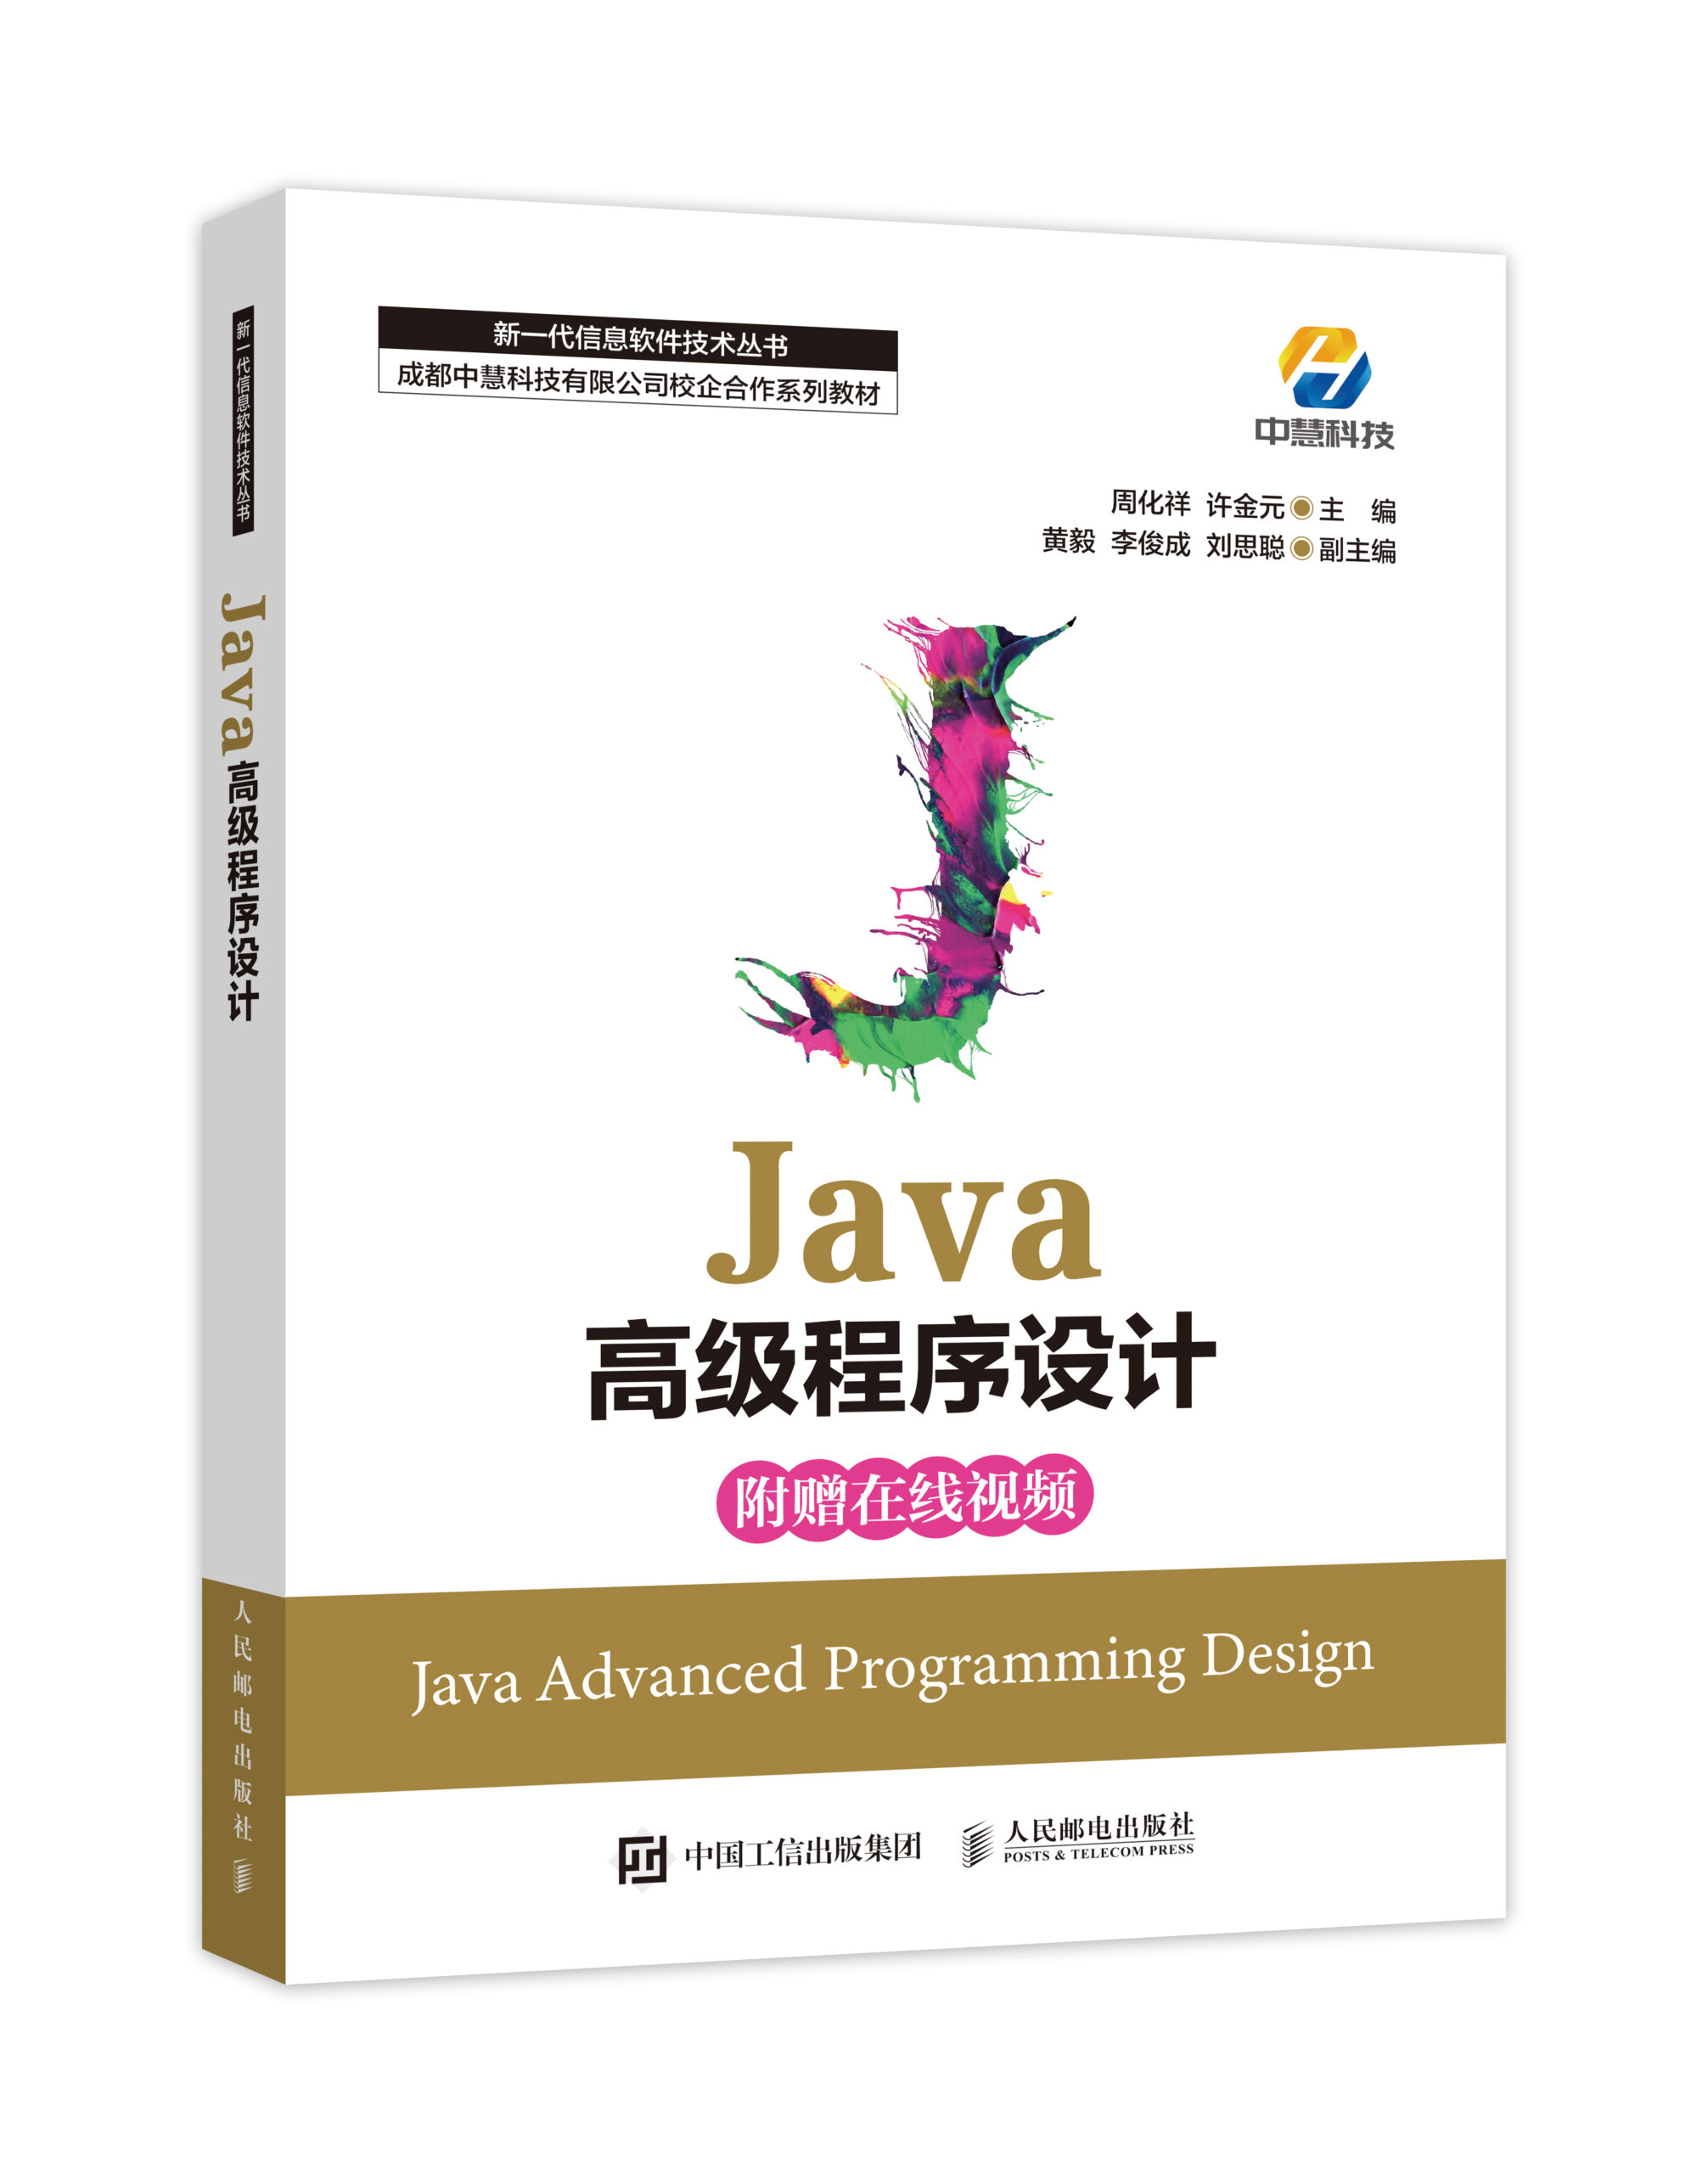 中慧集团Web技术校企合作系列教材-《Java高级程序设计》介绍